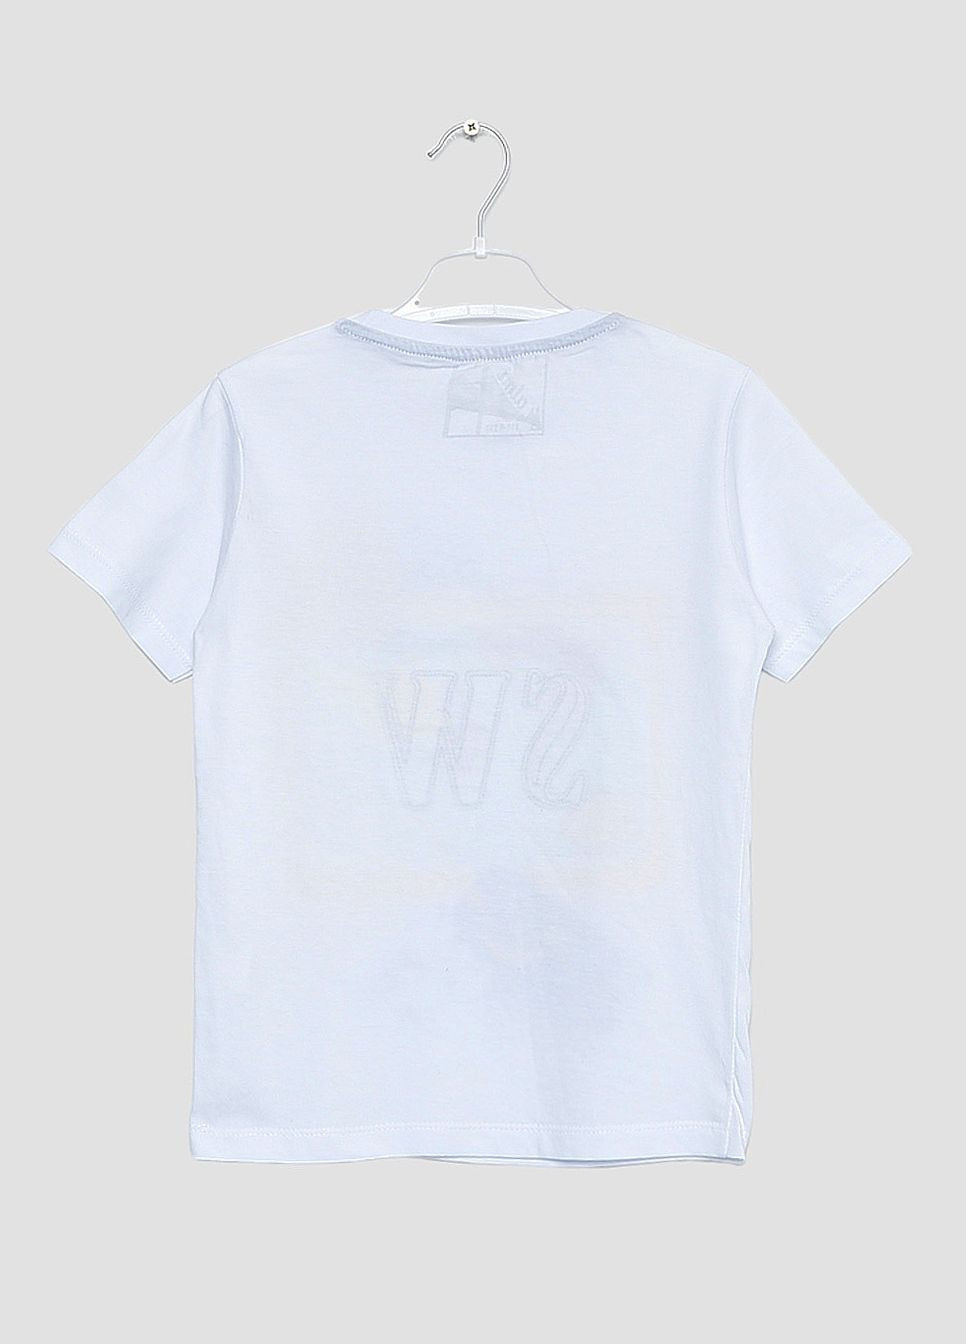 Белая летняя футболка детская для мальчика белого цвета Let's Shop